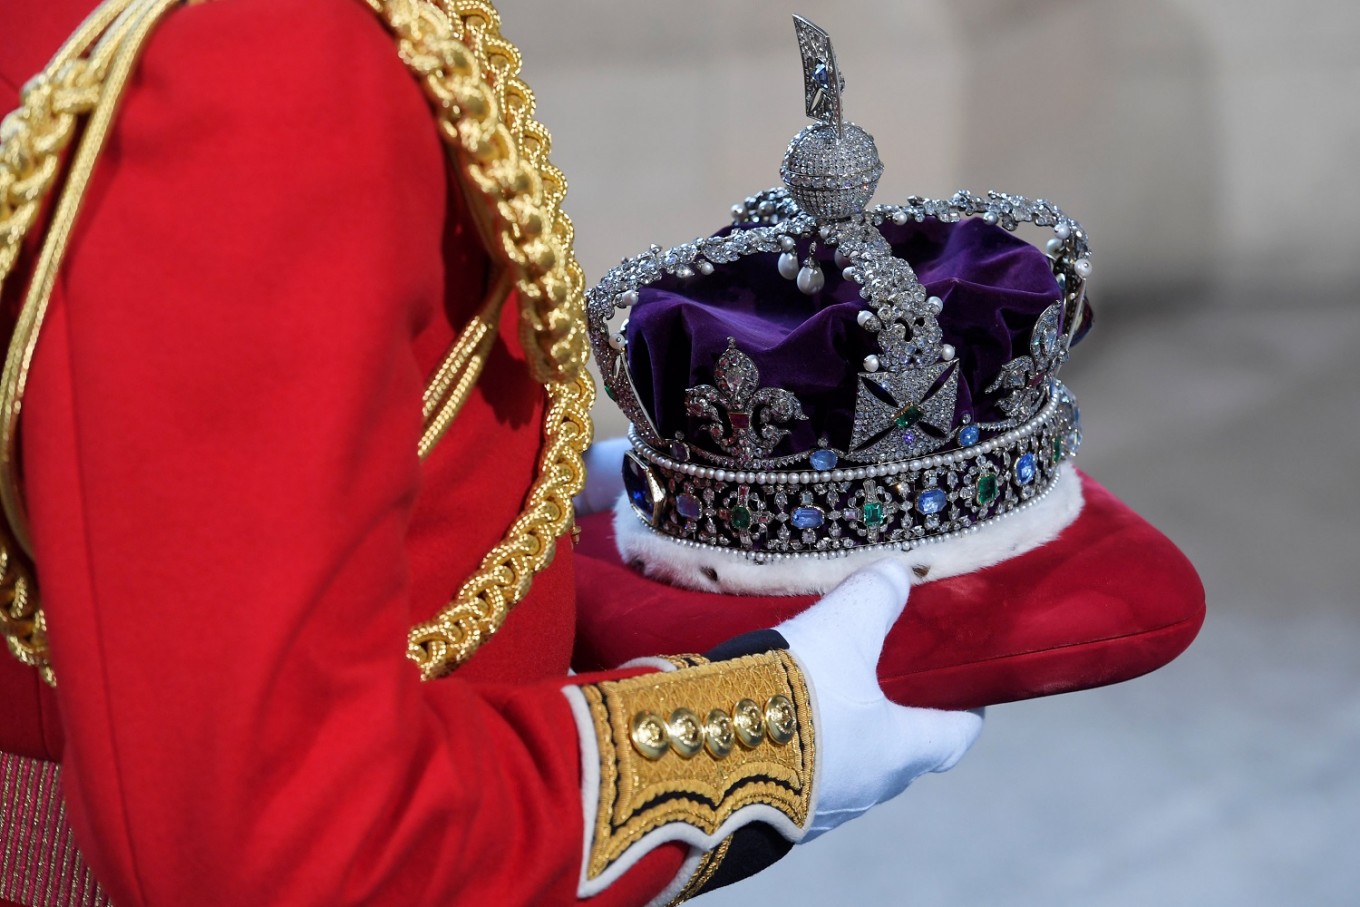 Αυτή είναι η σειρά διαδοχής στον βασιλικό θρόνο της Αγγλίας – Τι θα συμβεί όταν (και αν) αποχωρήσει η βασίλισσα Ελισάβετ